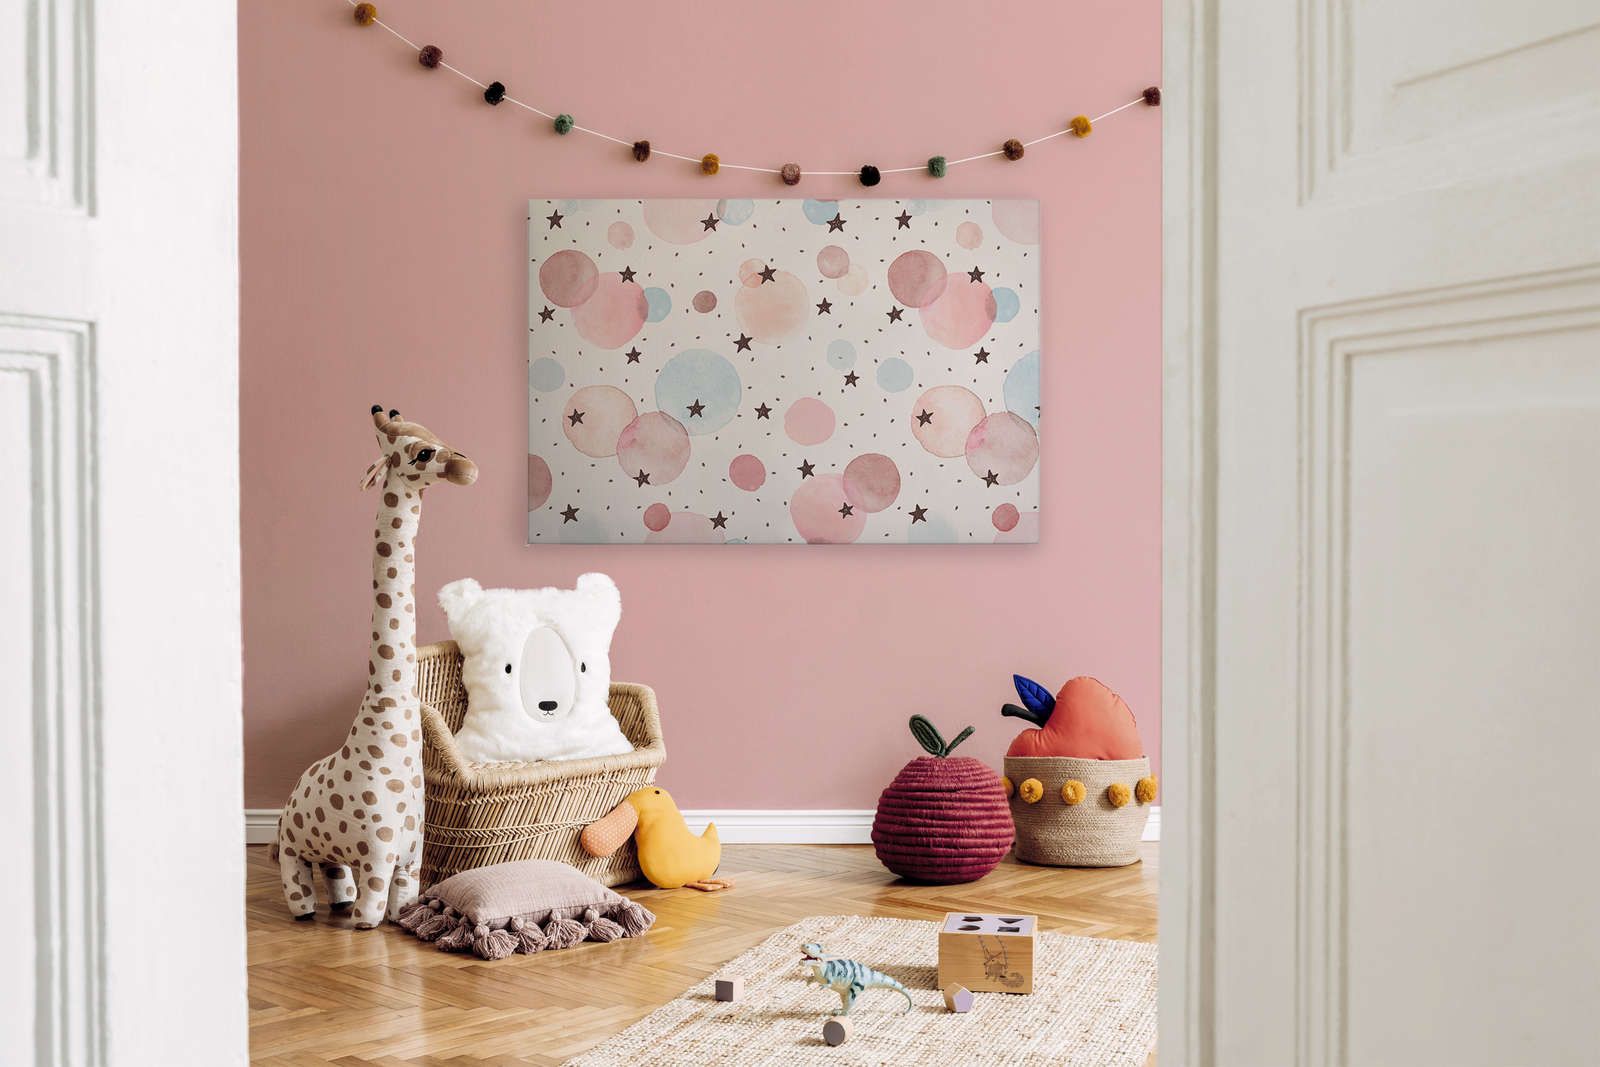             Tela per la camera dei bambini con stelle, punti e cerchi - 120 cm x 80 cm
        